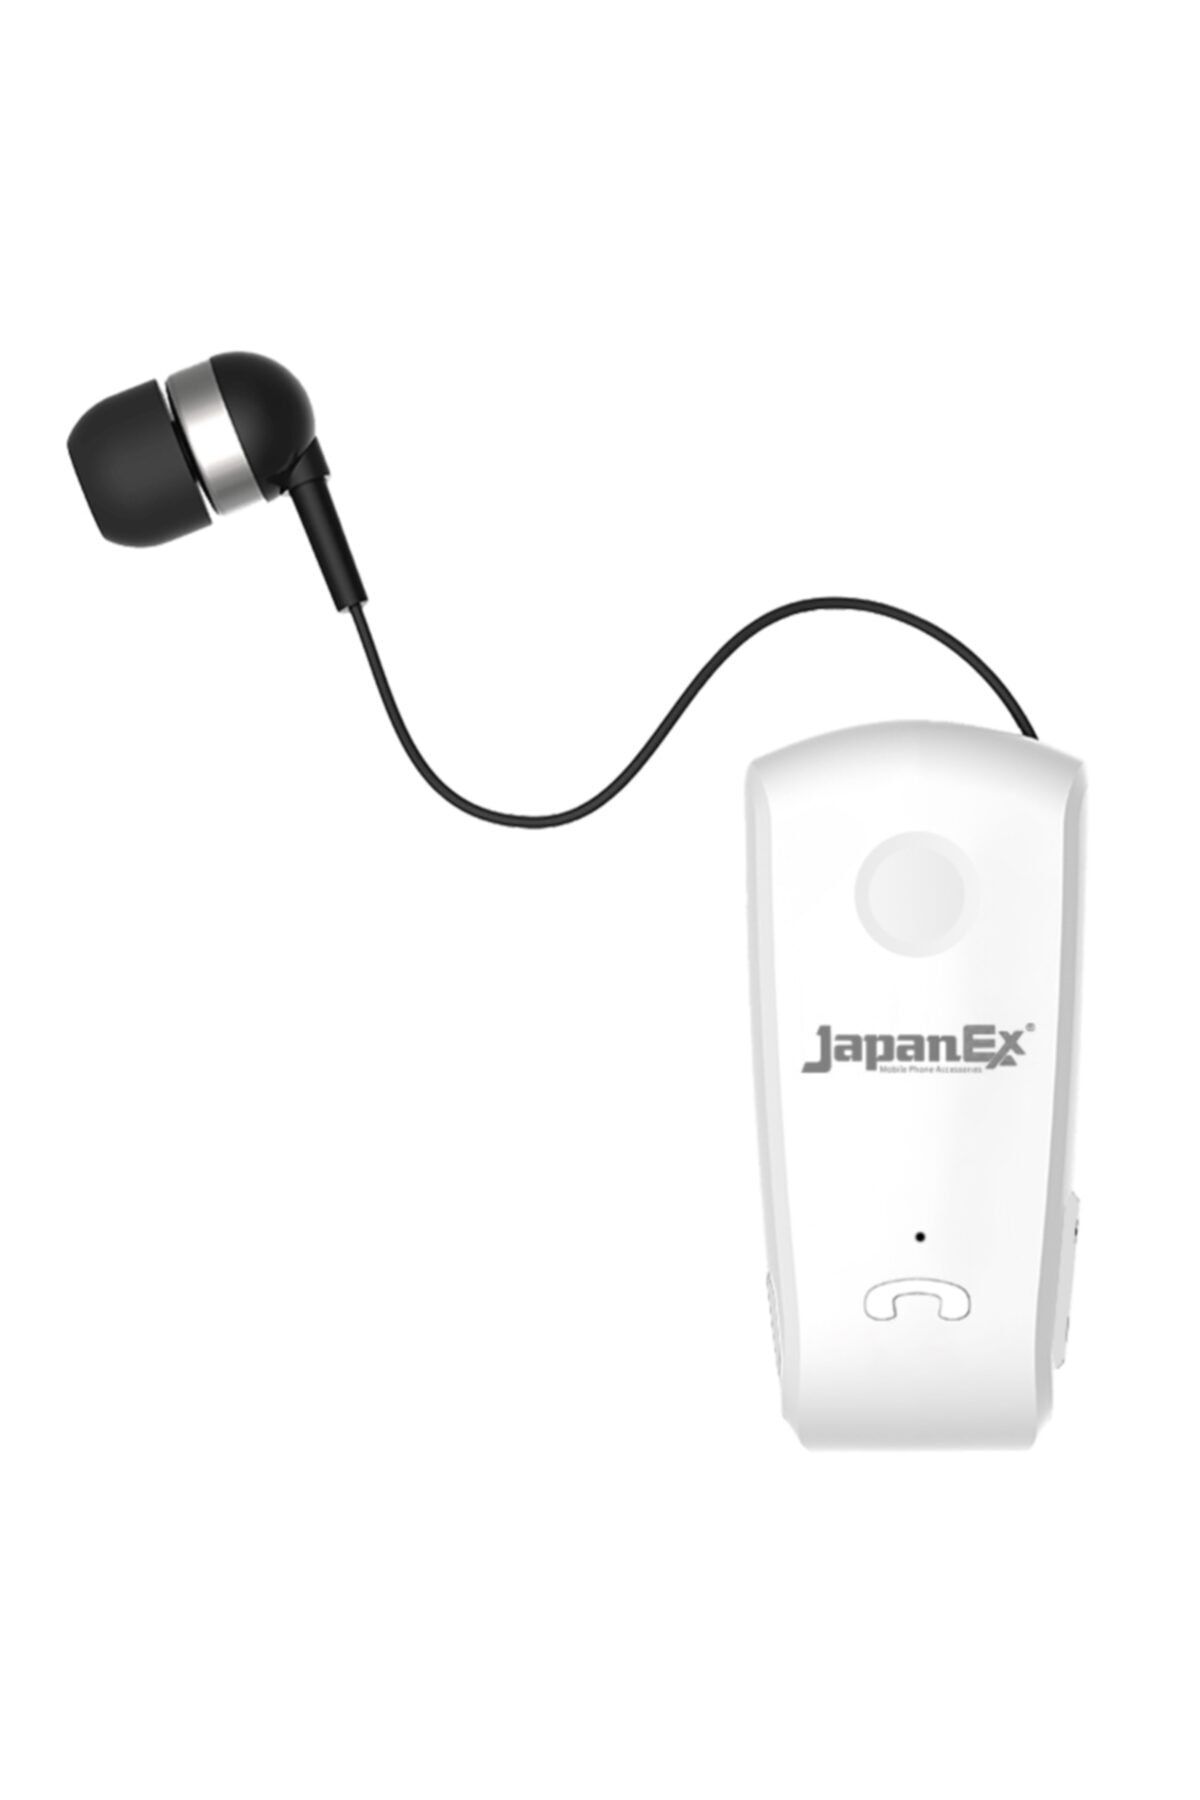 Japanex A8 Yaka Askılı Makaralı Bluetooth Kulaklık